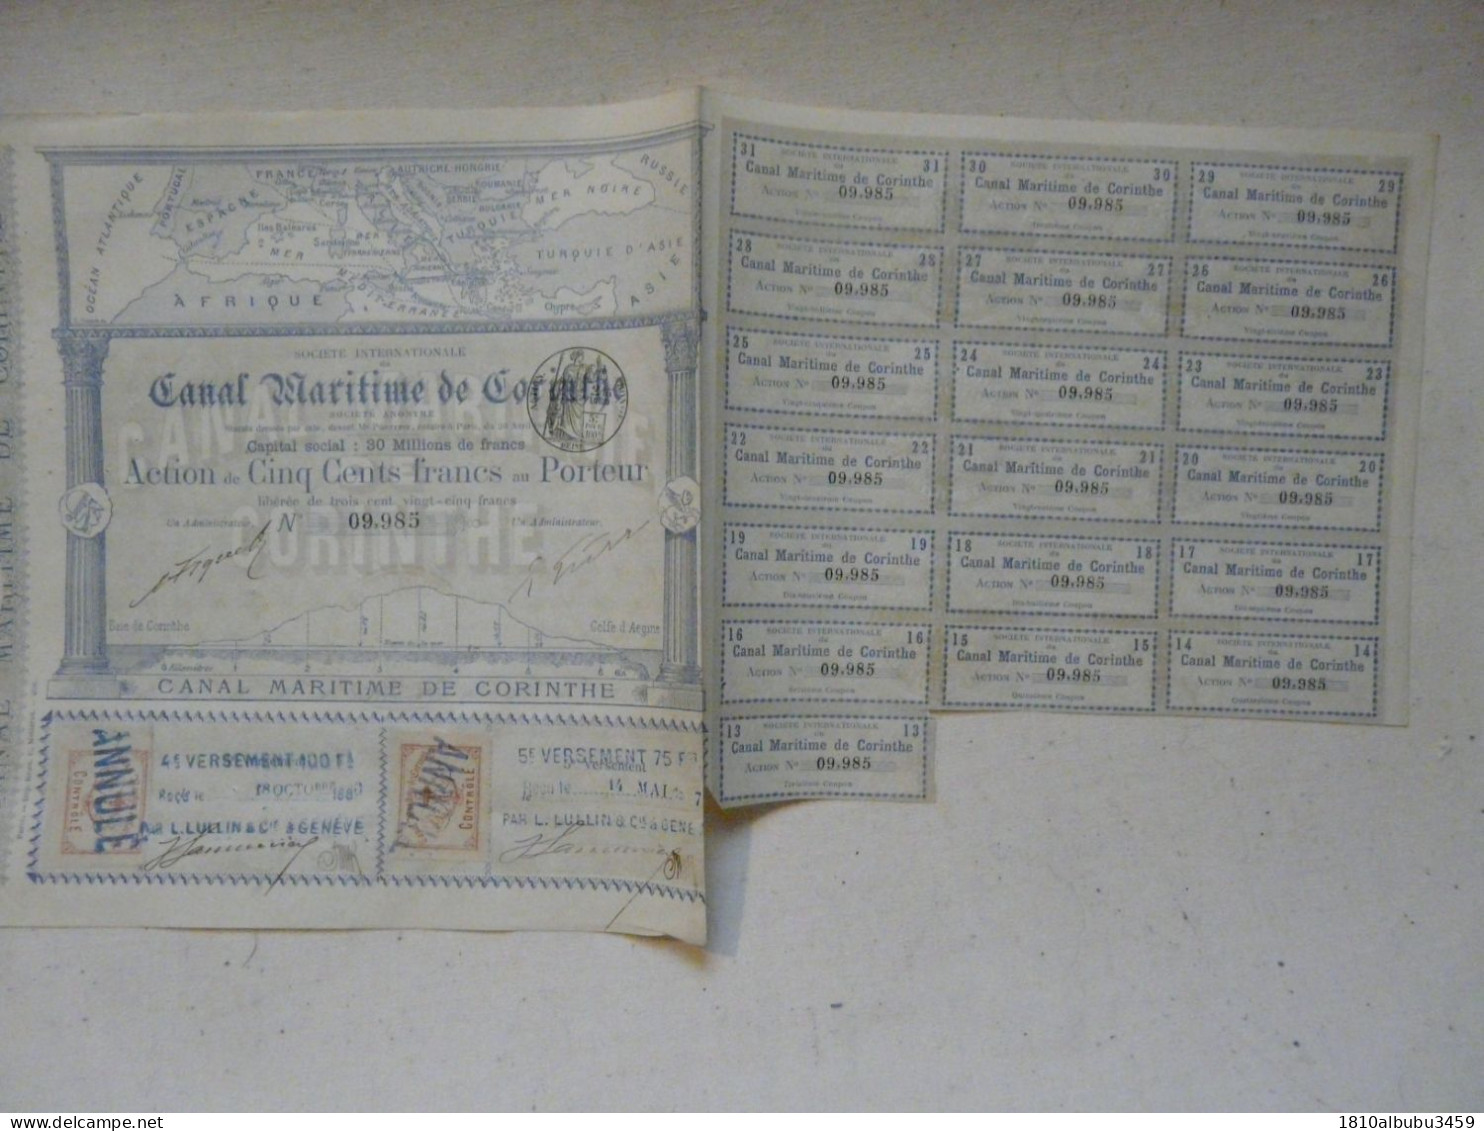 RARE - ACTION DE CINQ CENTS FRANCS - SOCIETE INTERNATIONALE DU CANAL MARITIME DE CORINTHE 1886-1887 - Schiffahrt